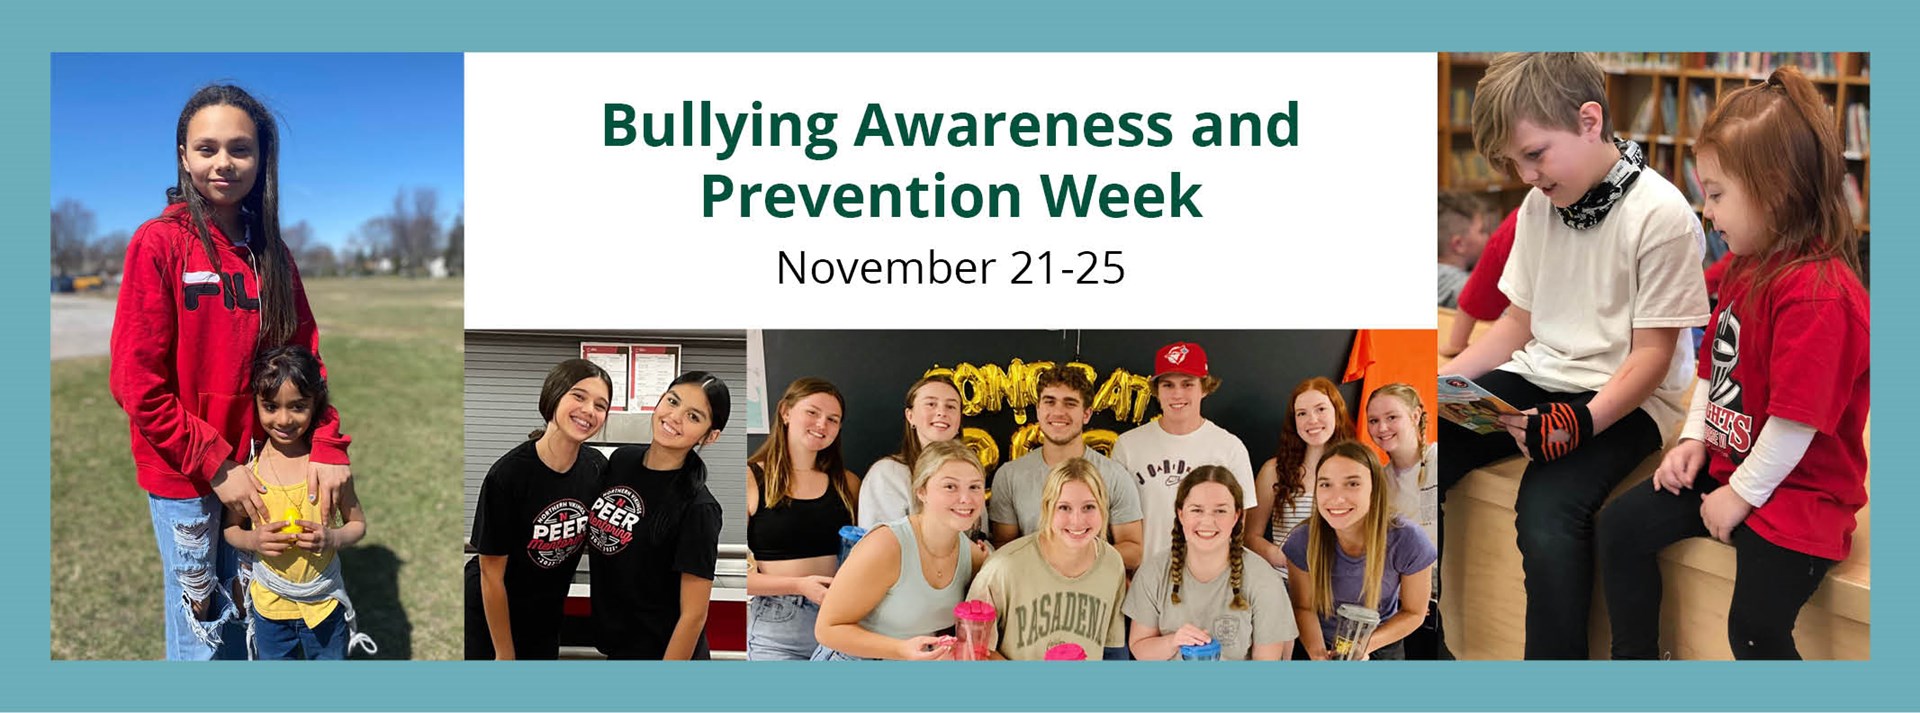 Bullying Awareness_Website banner.jpg